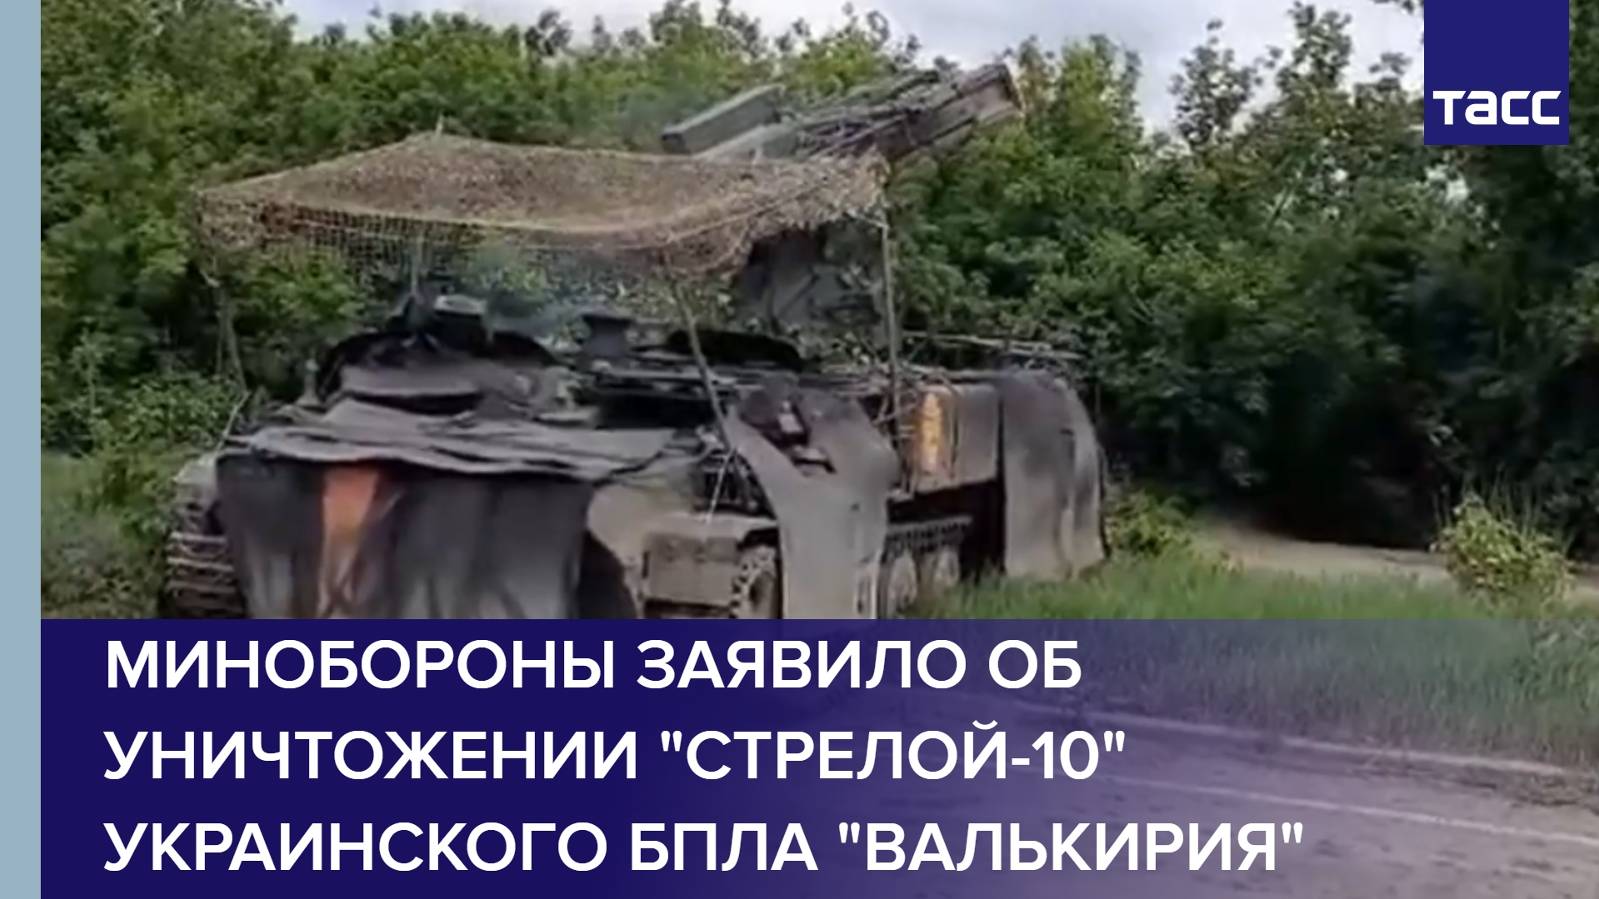 Минобороны заявило об уничтожении "Стрелой-10" украинского БПЛА "Валькирия"